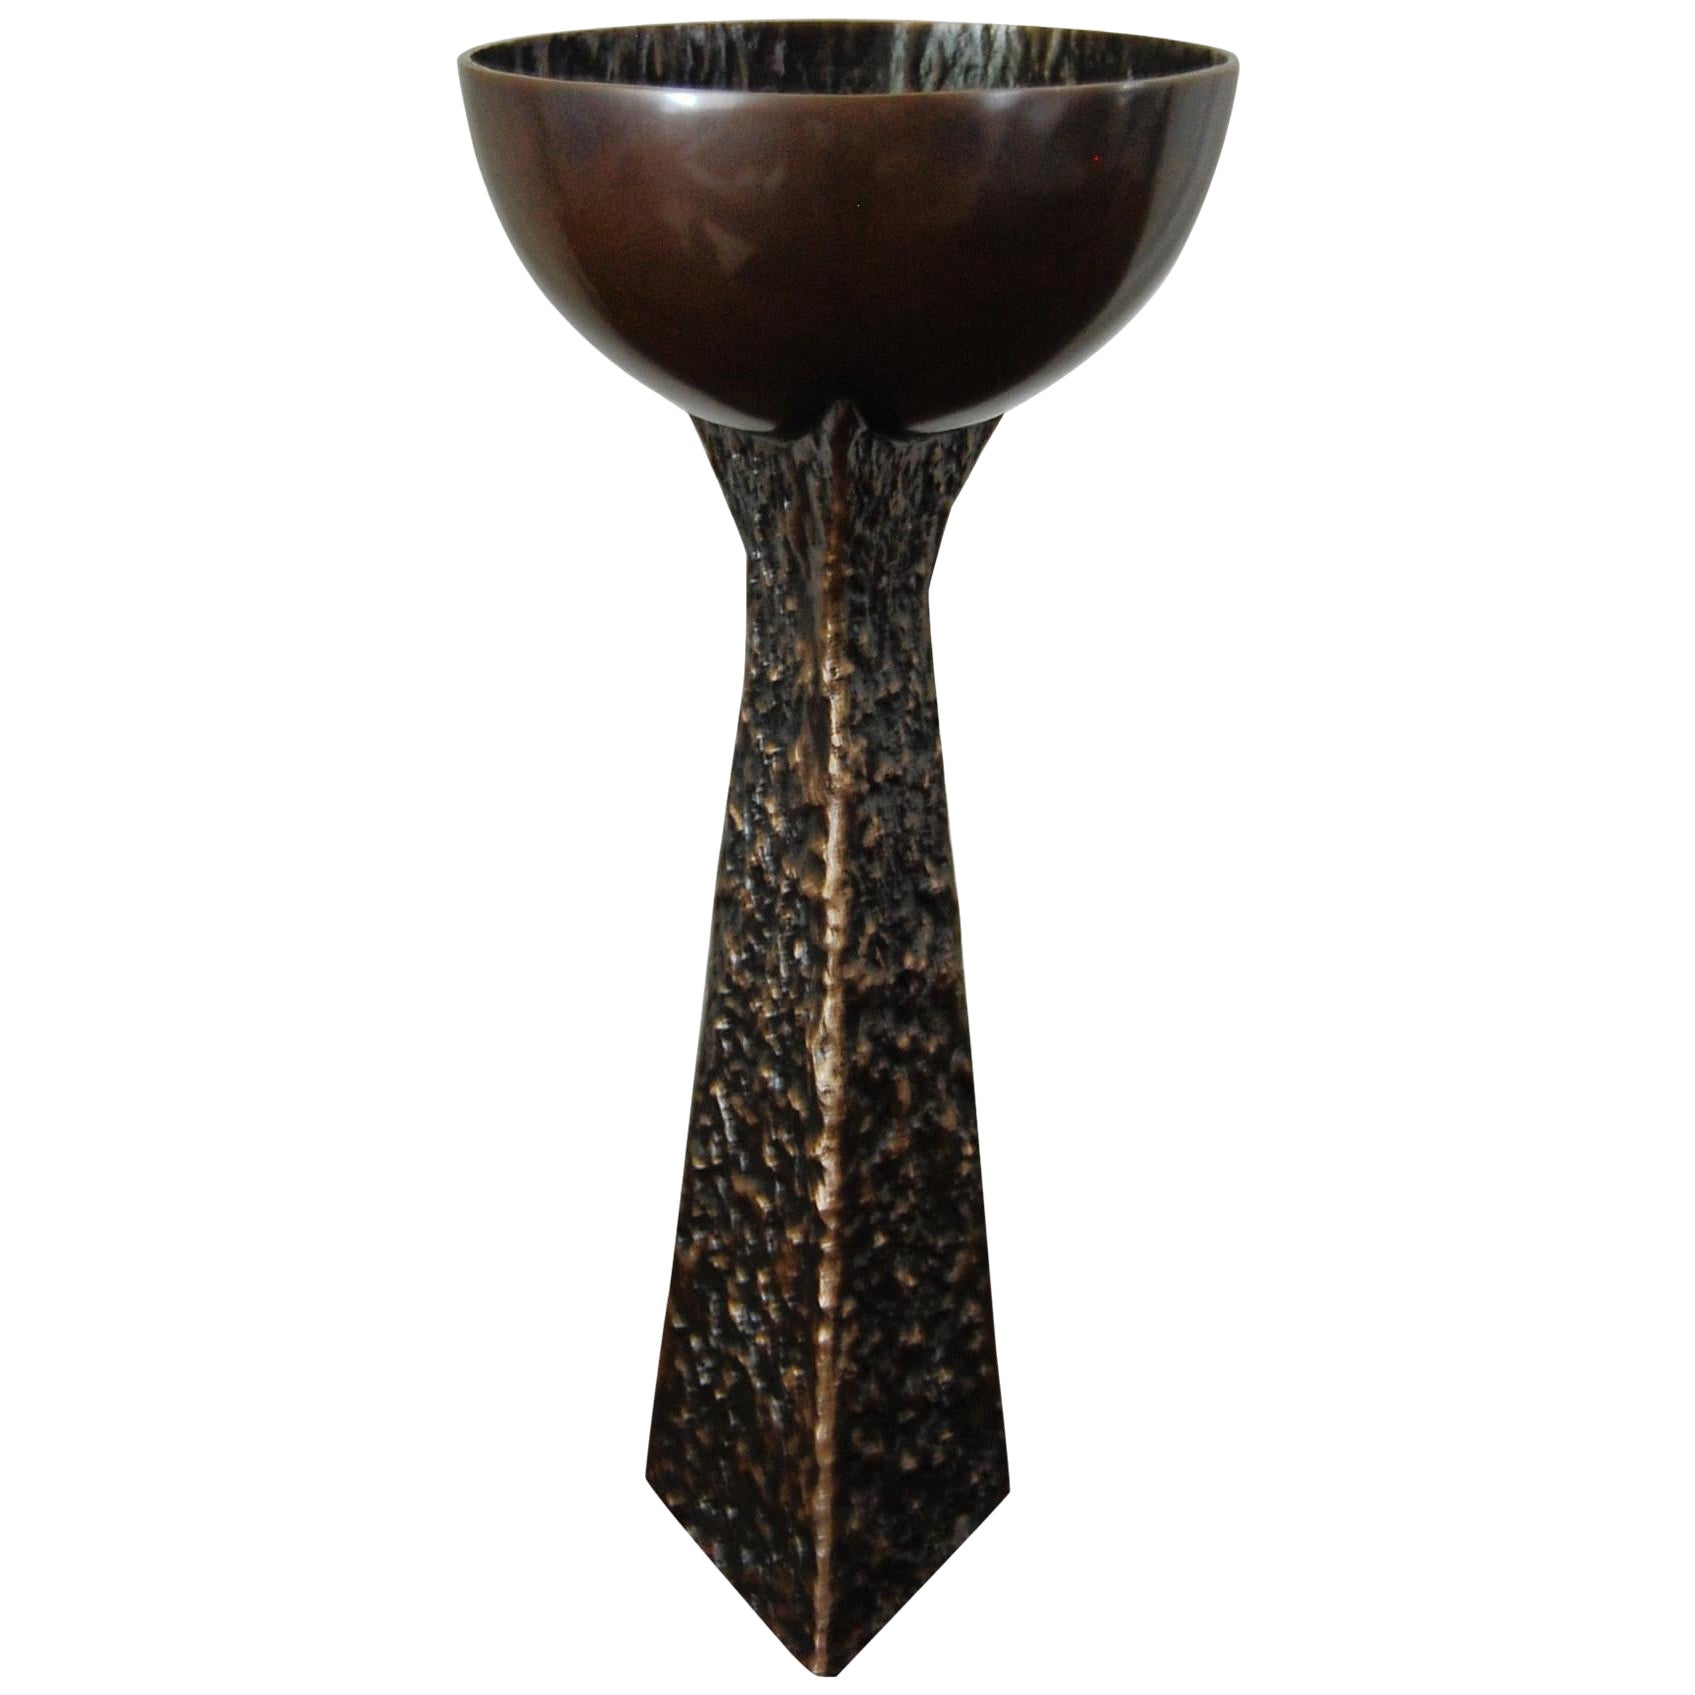 Cup Vase in Dark Bronze by Fakasaka Design